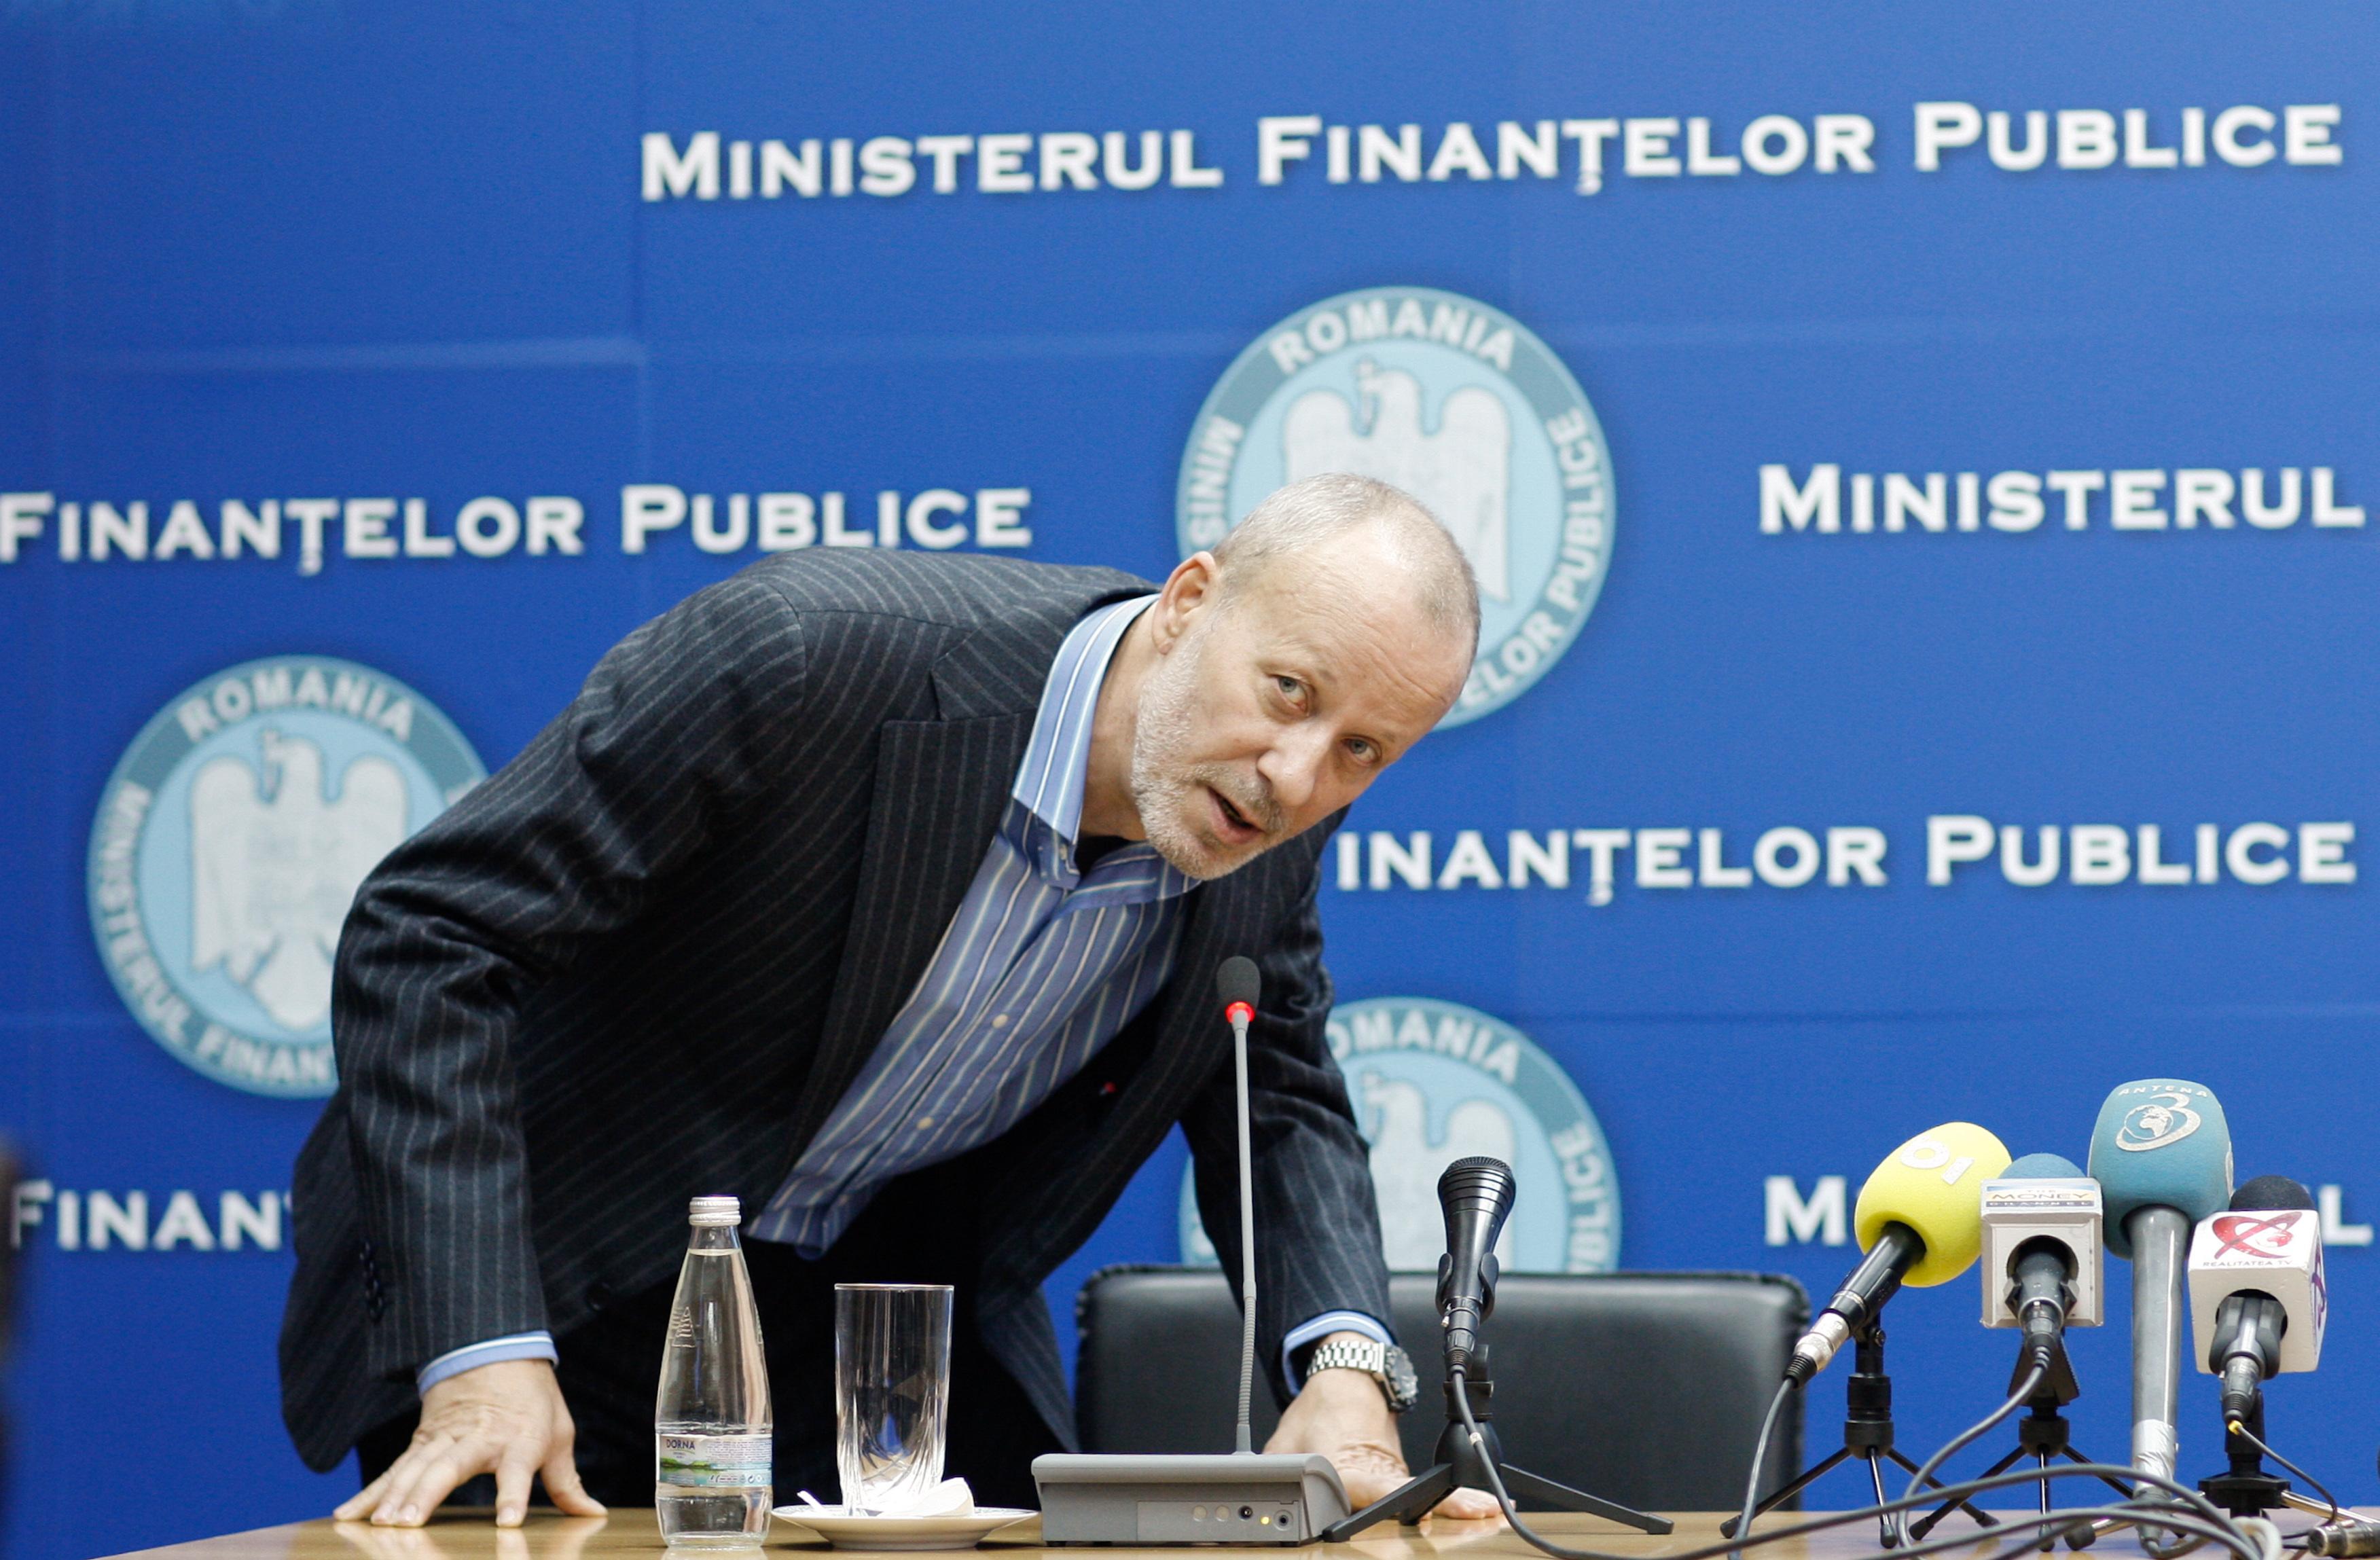 Ministrul Finantelor e "ciufut, capos si nu asculta"